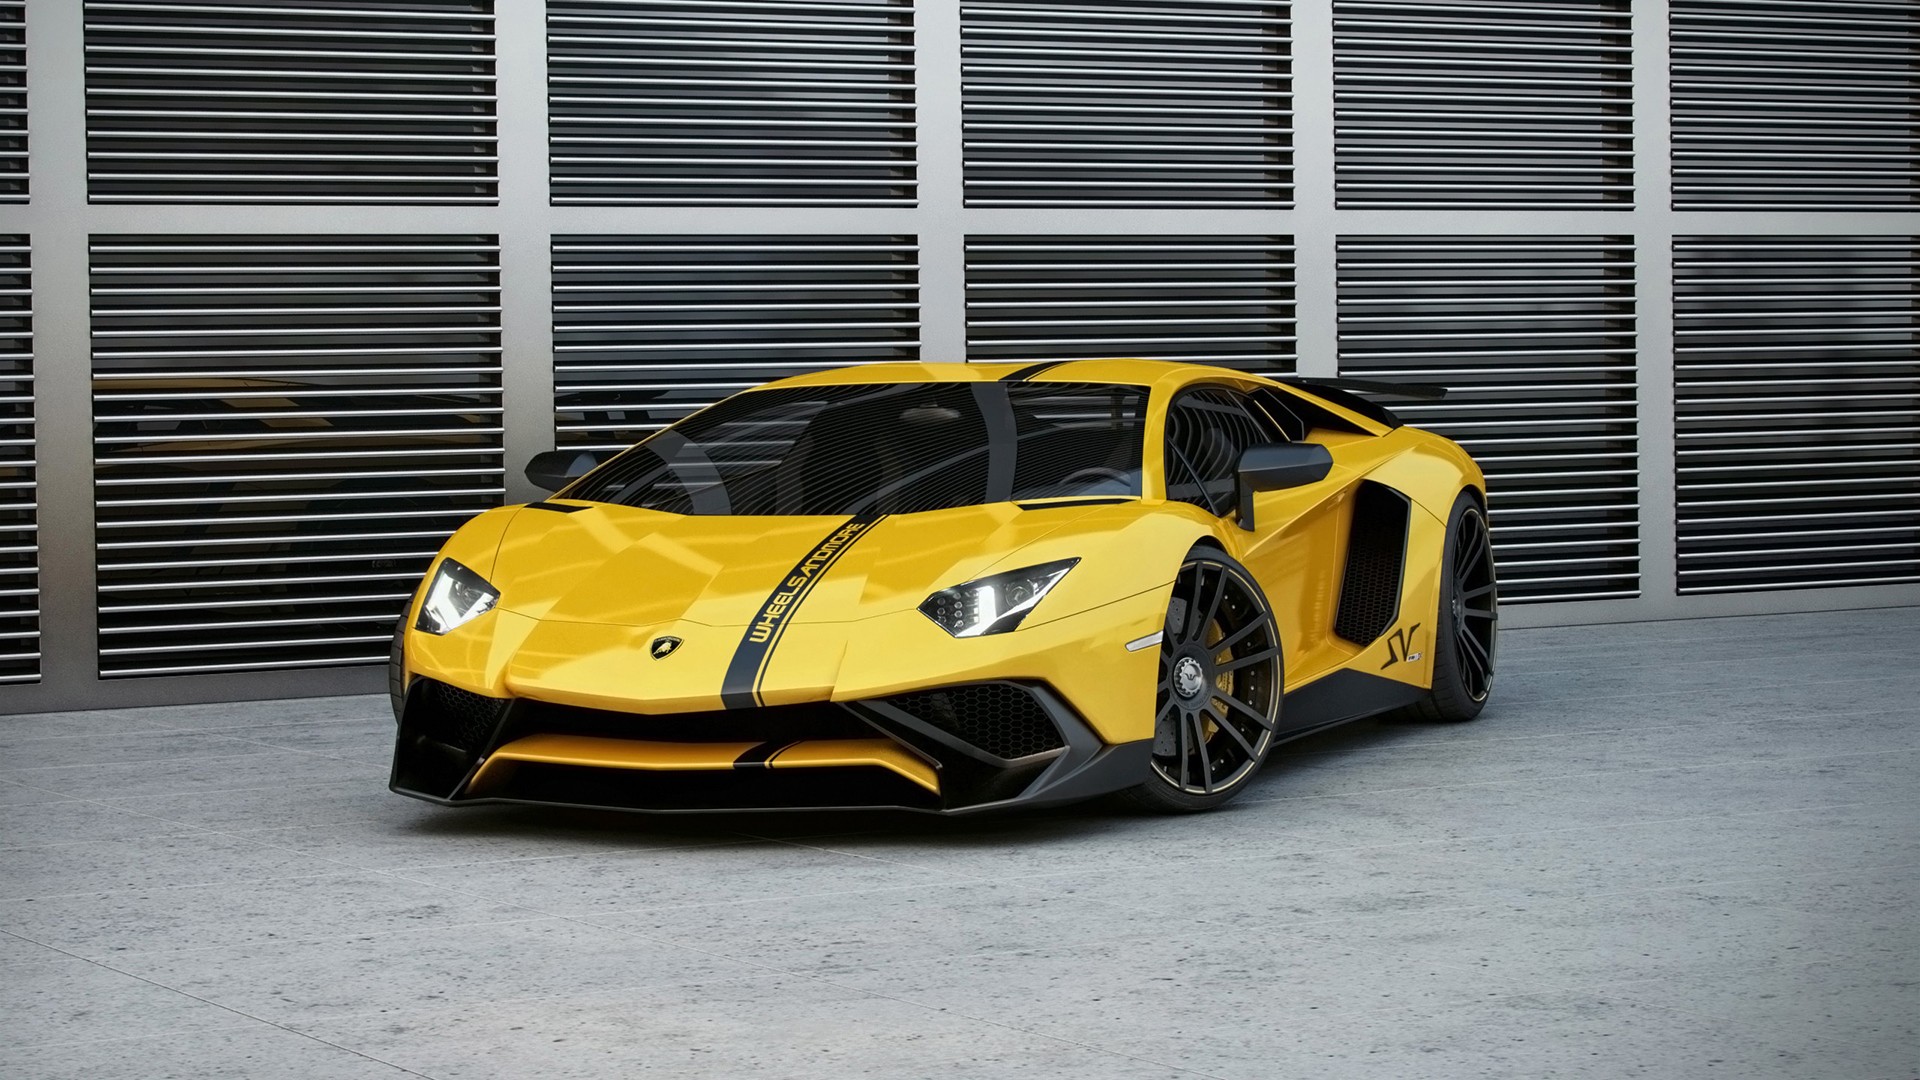 General 1920x1080 car Lamborghini Aventador vehicle yellow cars Lamborghini italian cars Volkswagen Group